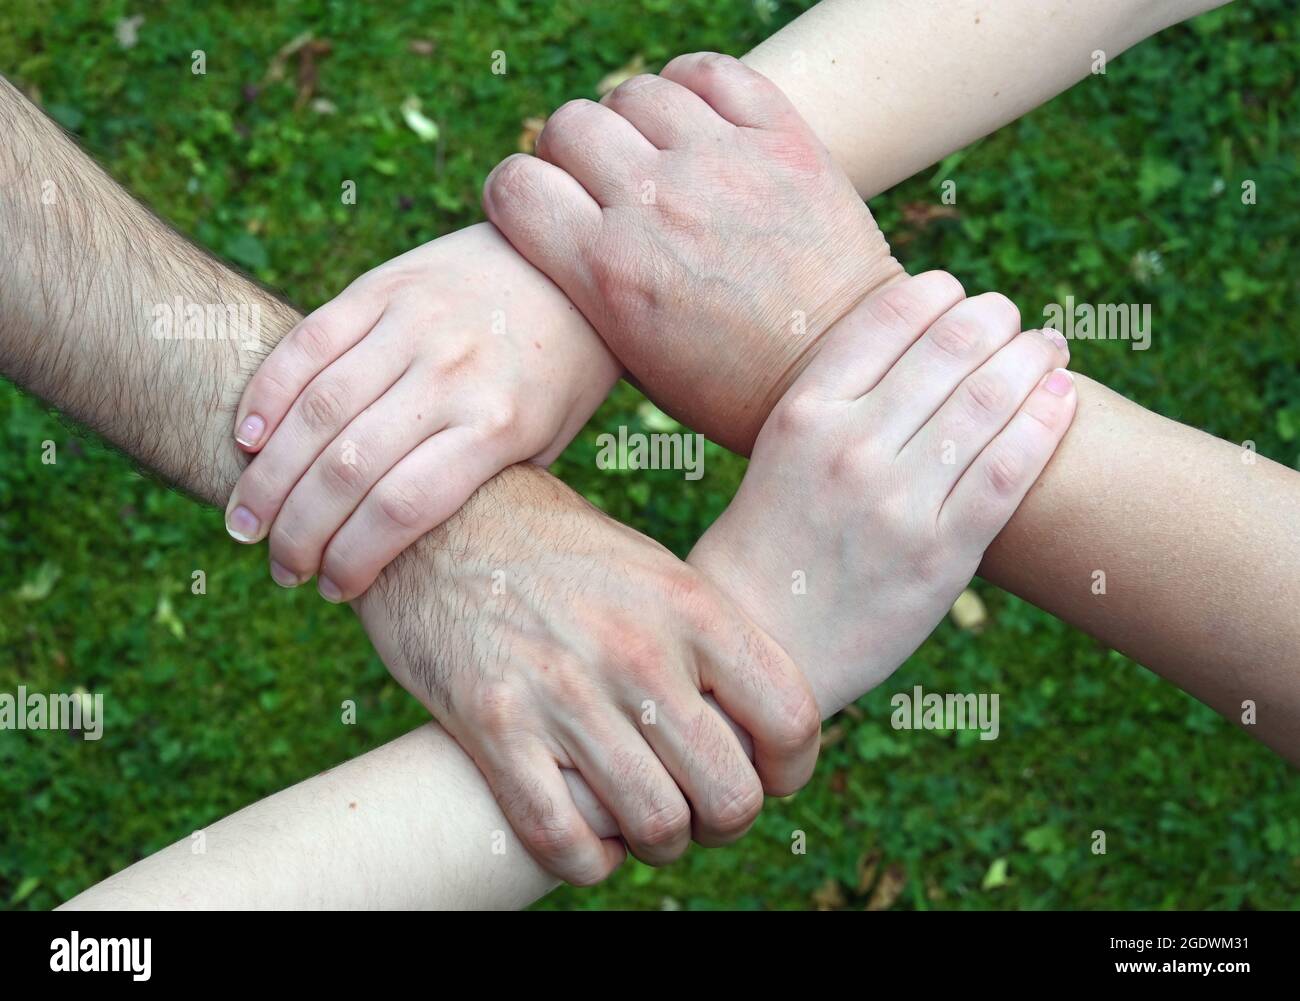 Vier Hände greifen das Handgelenk der Person vor ihnen und bilden ein Quadrat Stockfoto